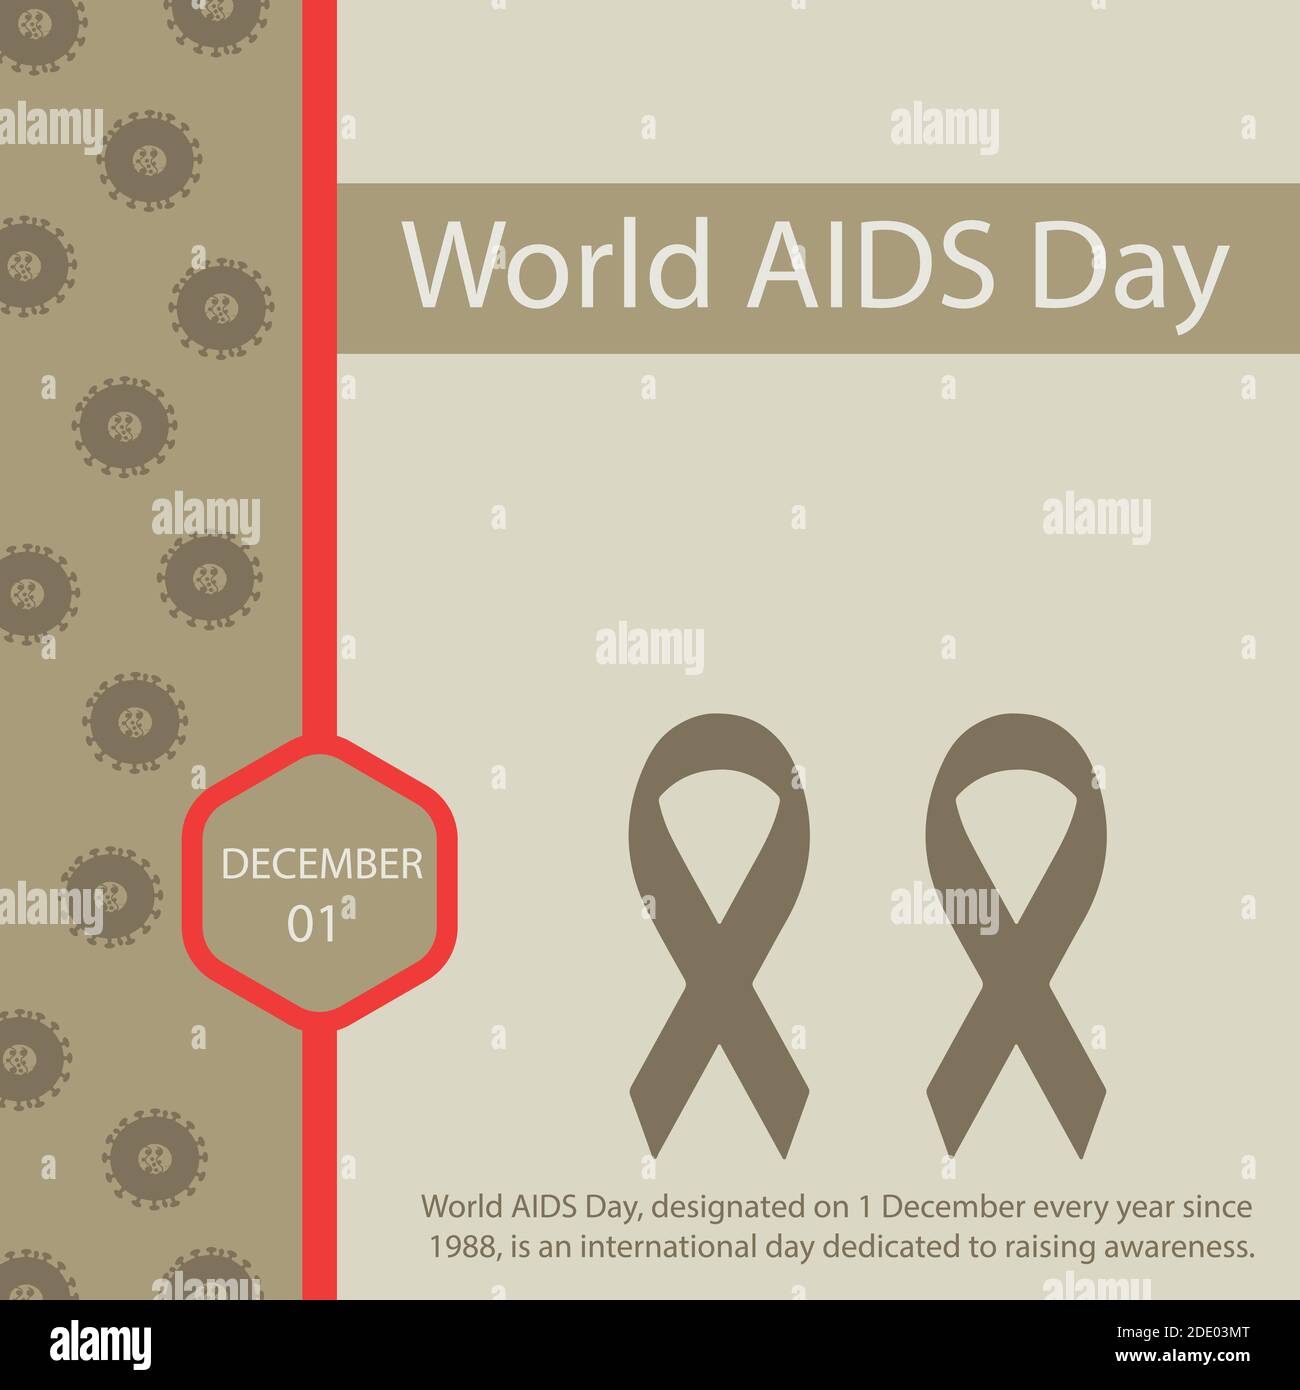 Der Welt-Aids-Tag, der seit 1988 jedes Jahr am 1. Dezember begangen wird, ist ein internationaler Tag, der der Sensibilisierung gewidmet ist. Stock Vektor